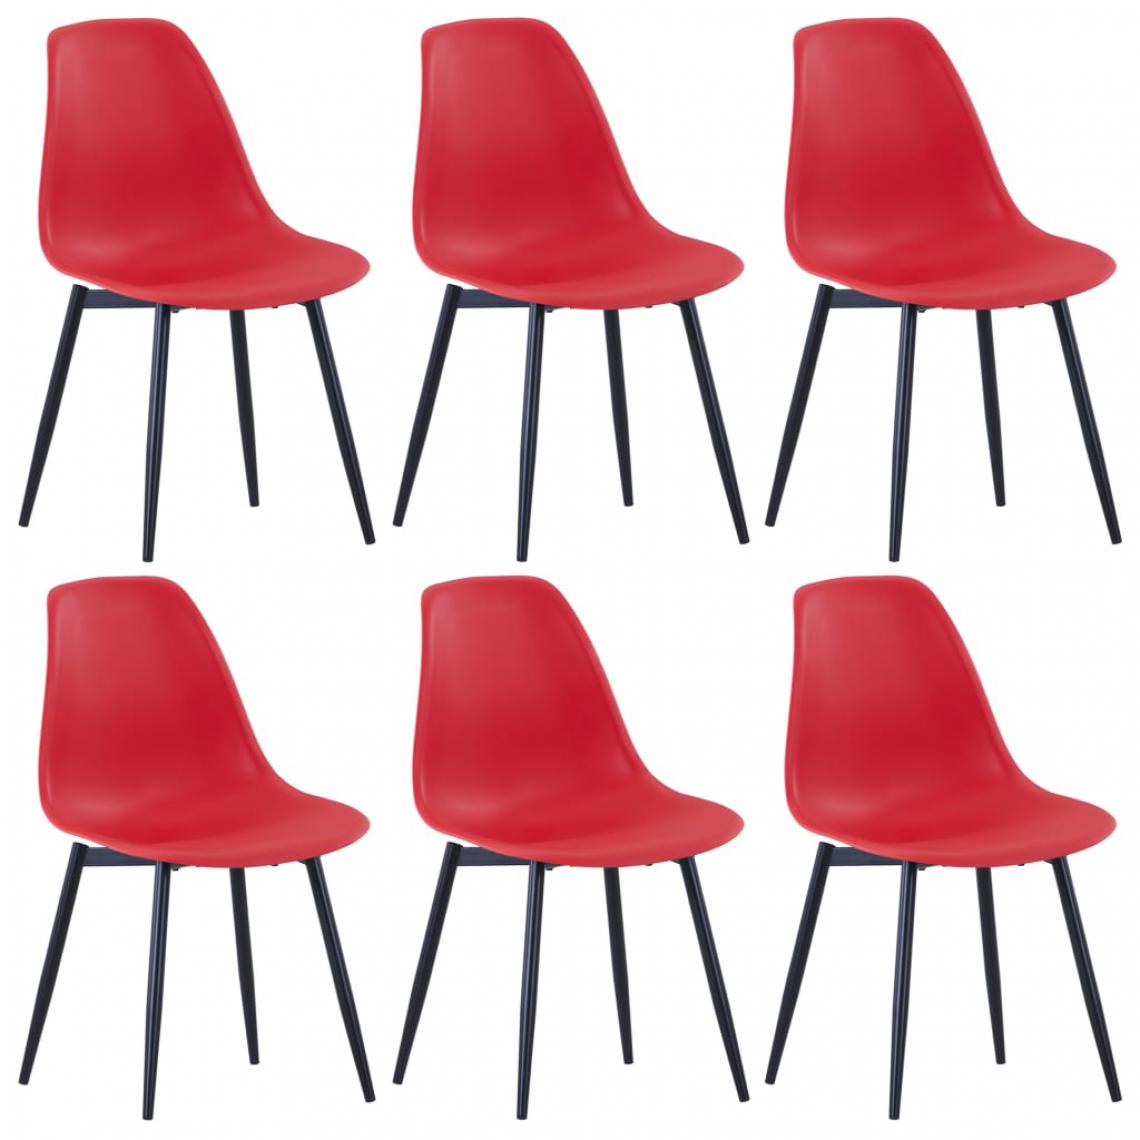 Icaverne - Magnifique Fauteuils et chaises categorie Belgrade Chaises de salle à manger 6 pcs Rouge PP - Chaises